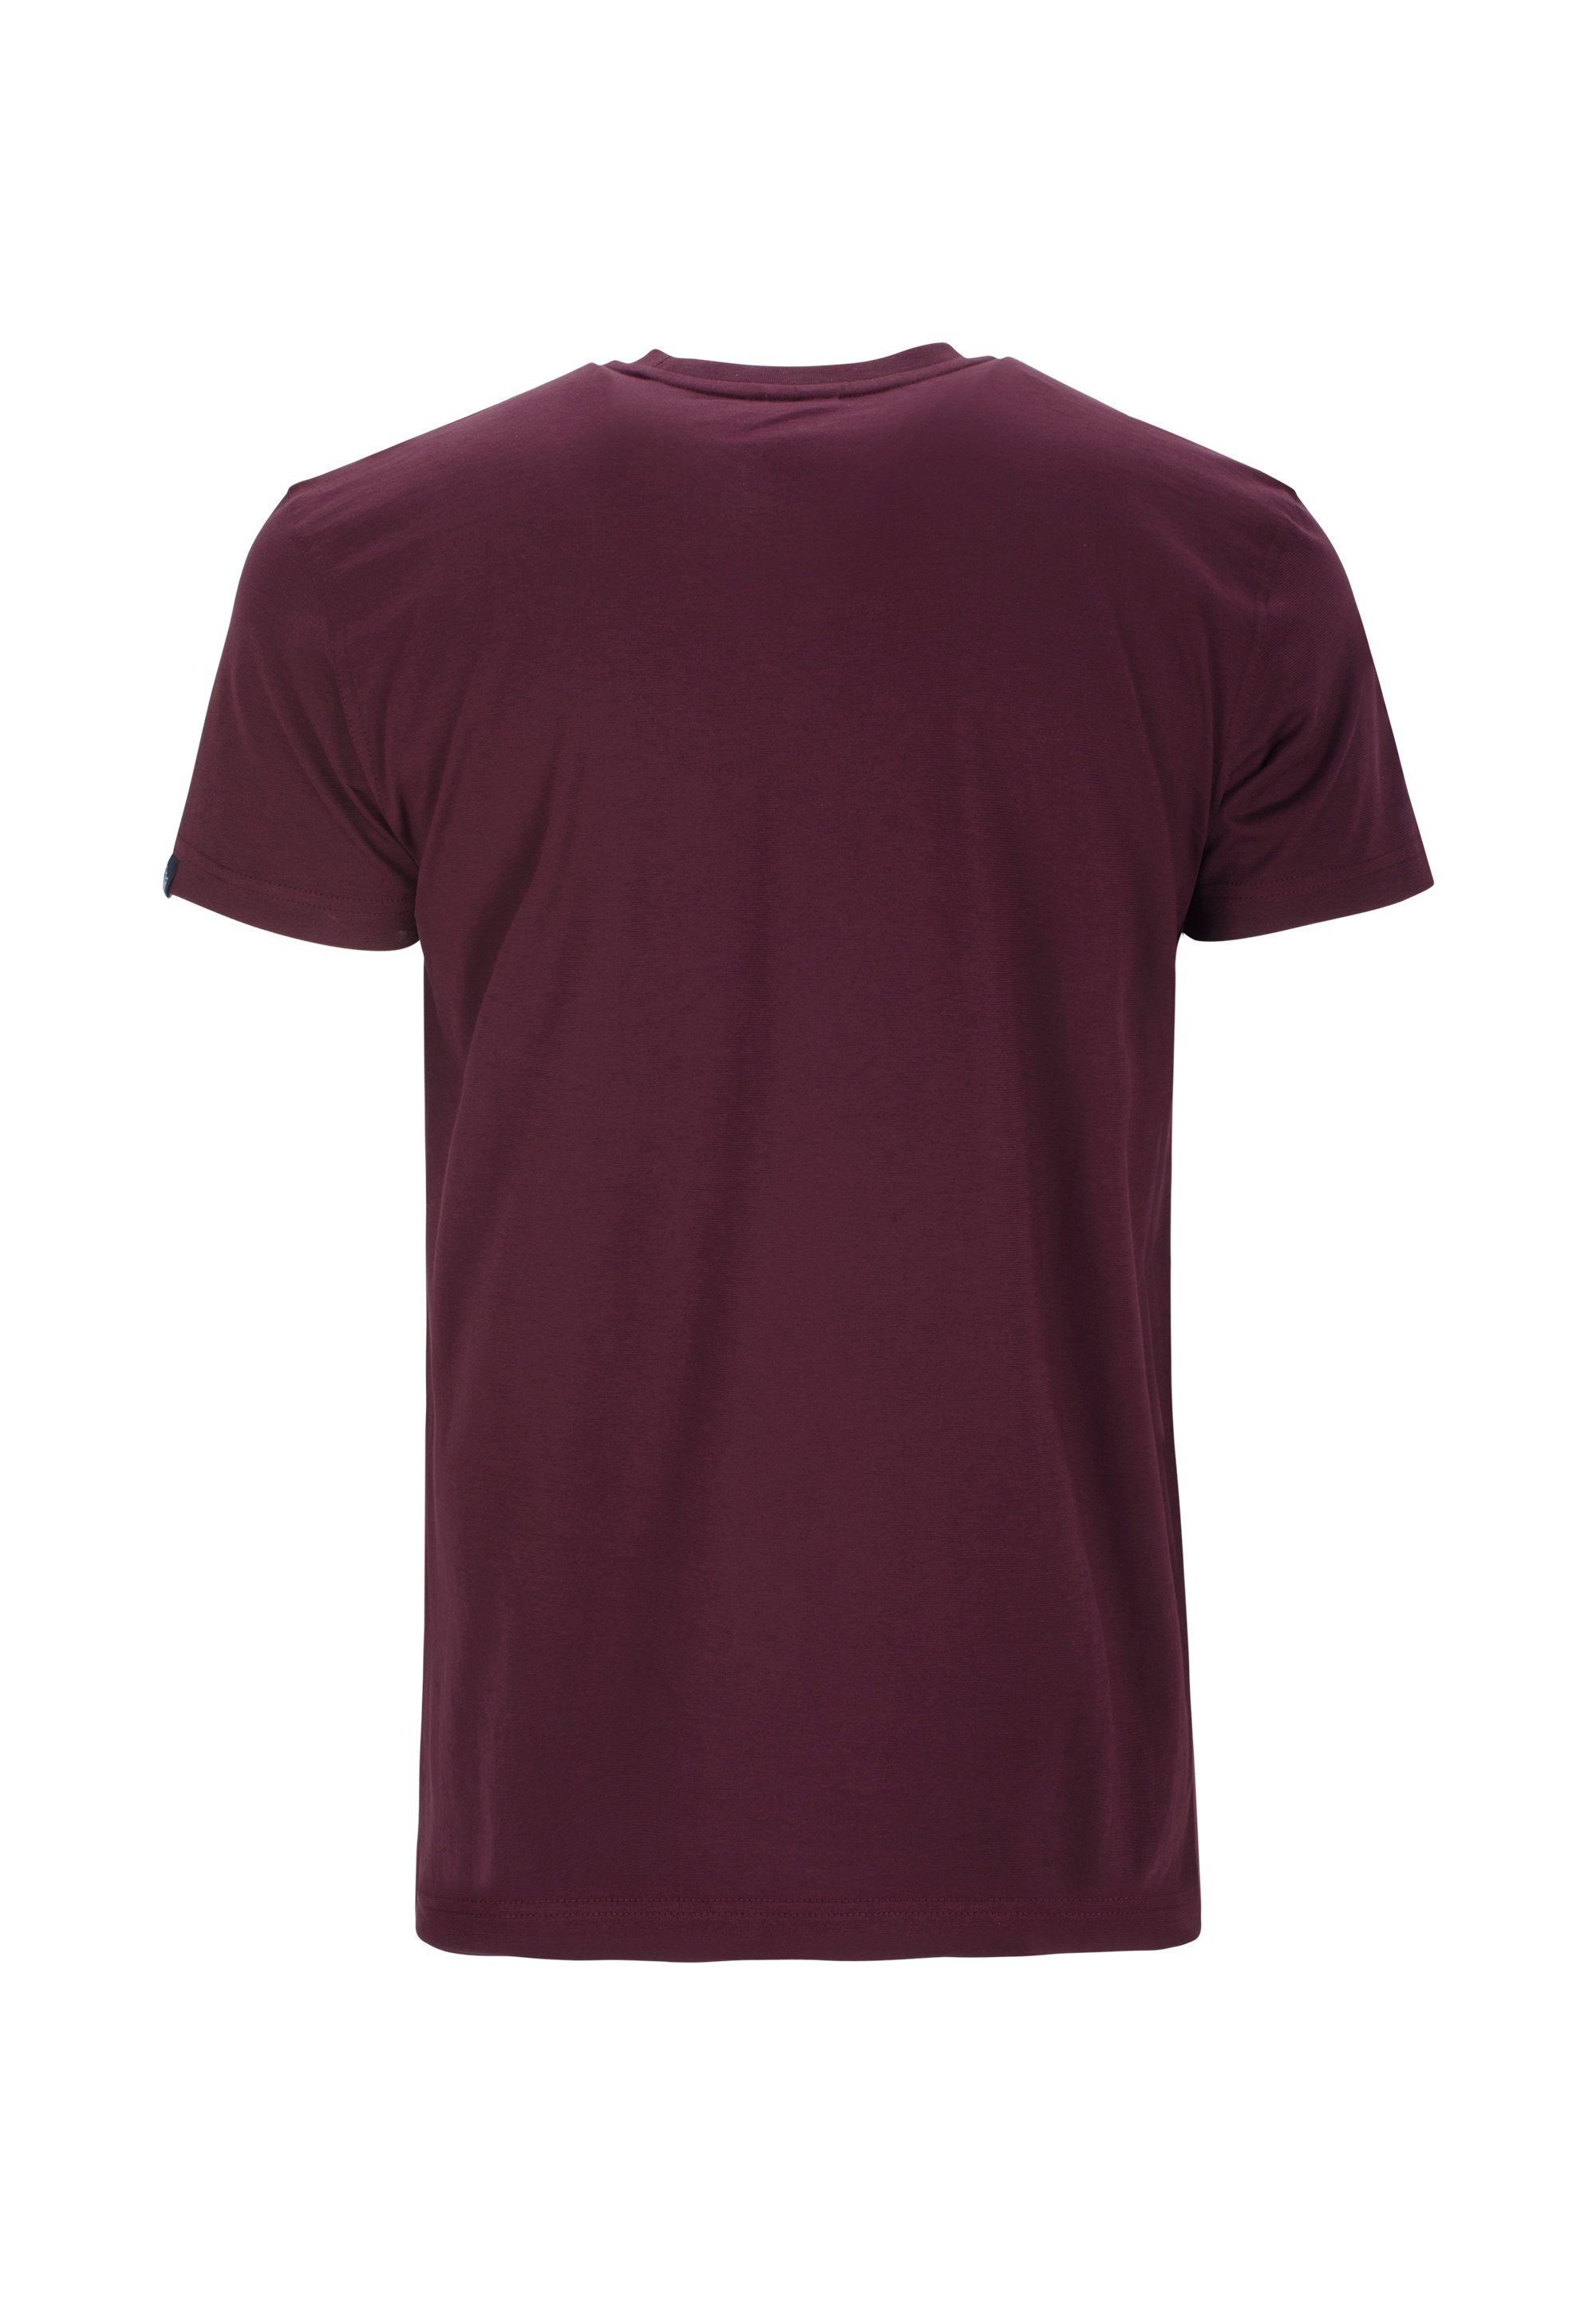 AHORN SPORTSWEAR T-Shirt klassischen Basic-Look im rot